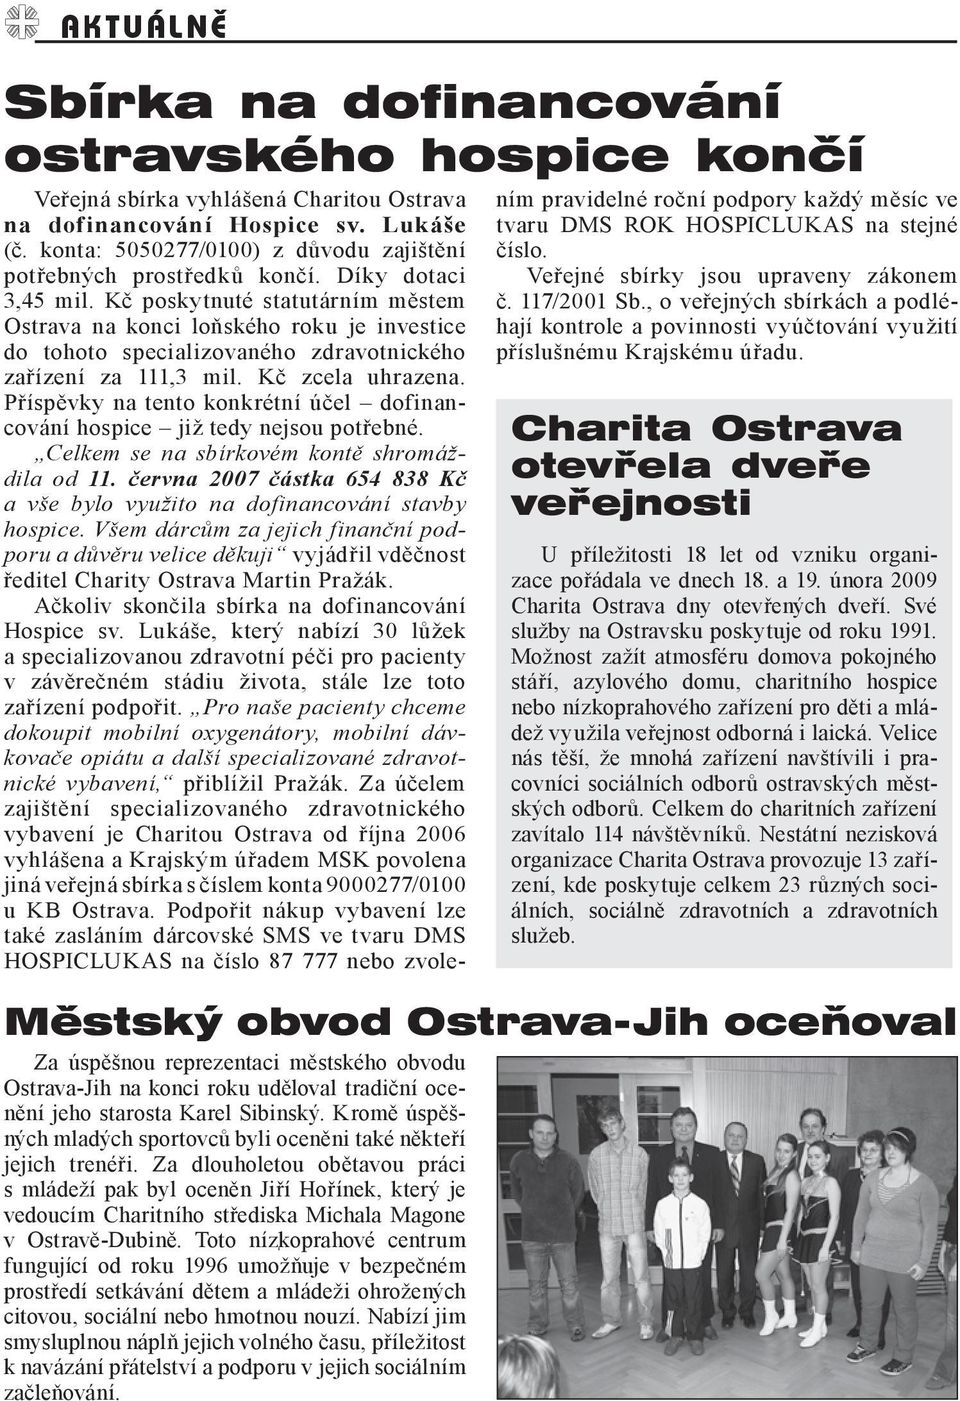 Kč poskytnuté statutárním městem Ostrava na konci loňského roku je investice do tohoto specializovaného zdravotnického zařízení za 111,3 mil. Kč zcela uhrazena.